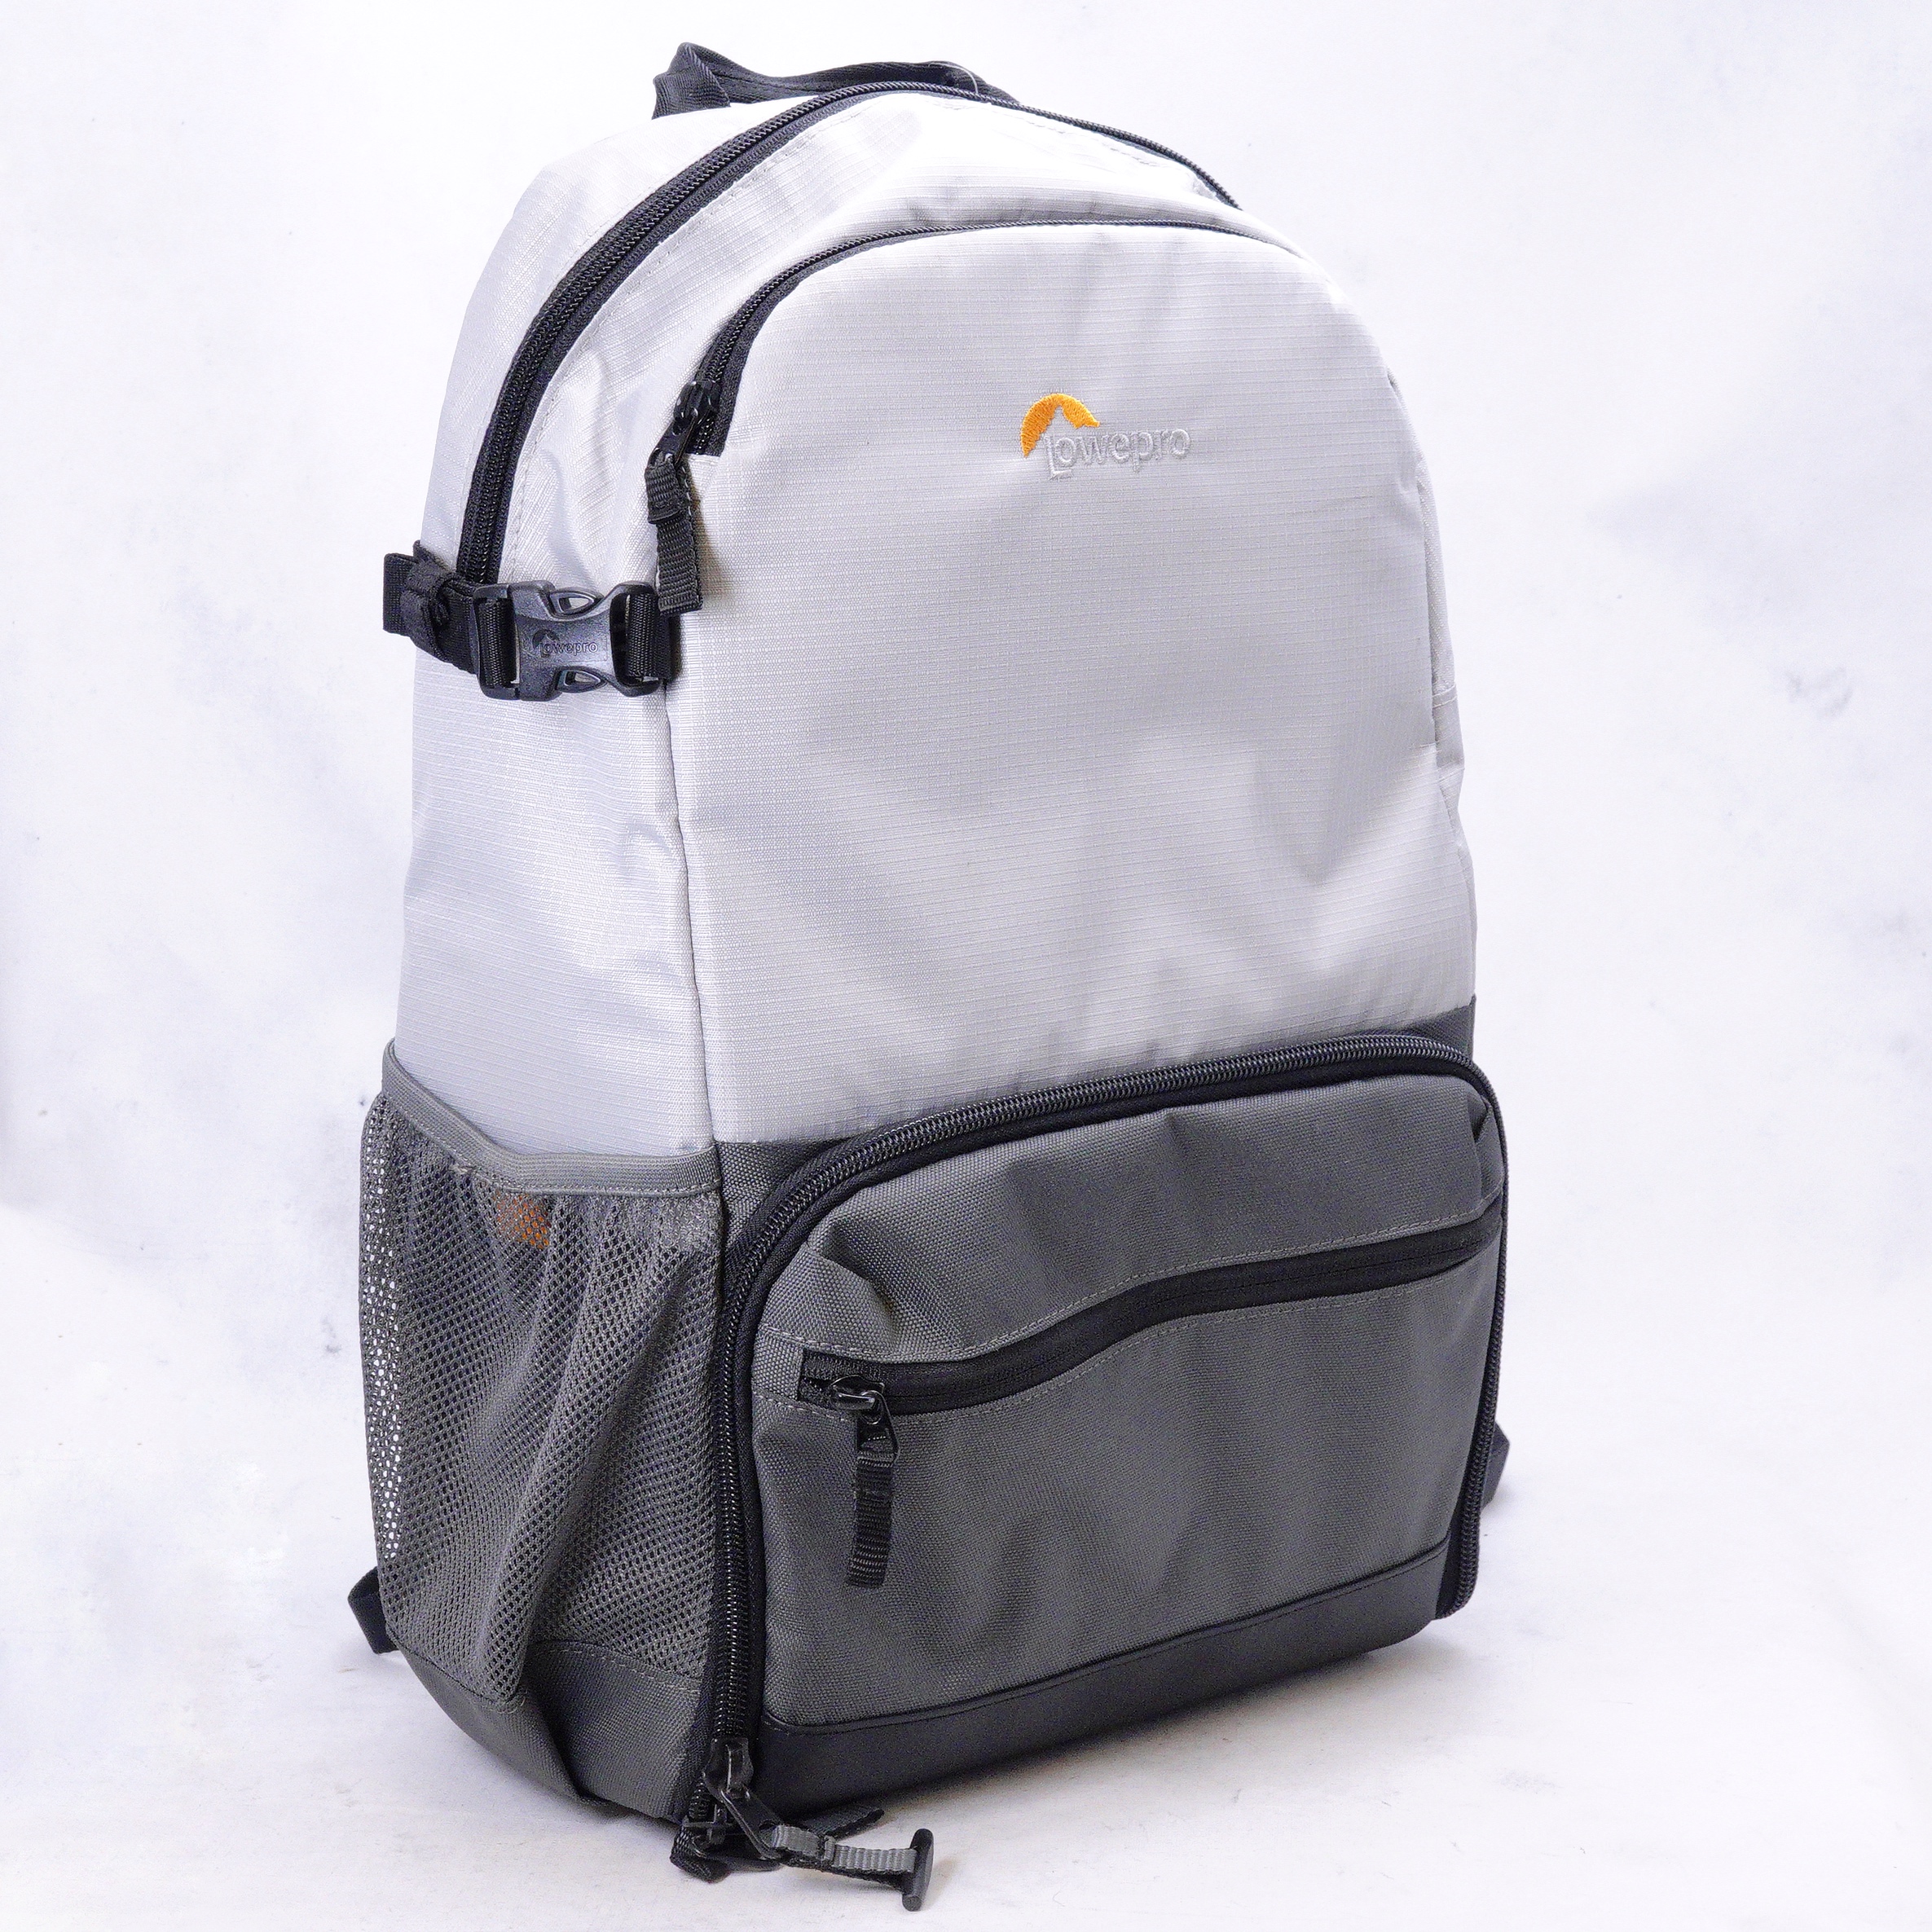 Lowepro Truckee BP 200 LX Backpack - Usado